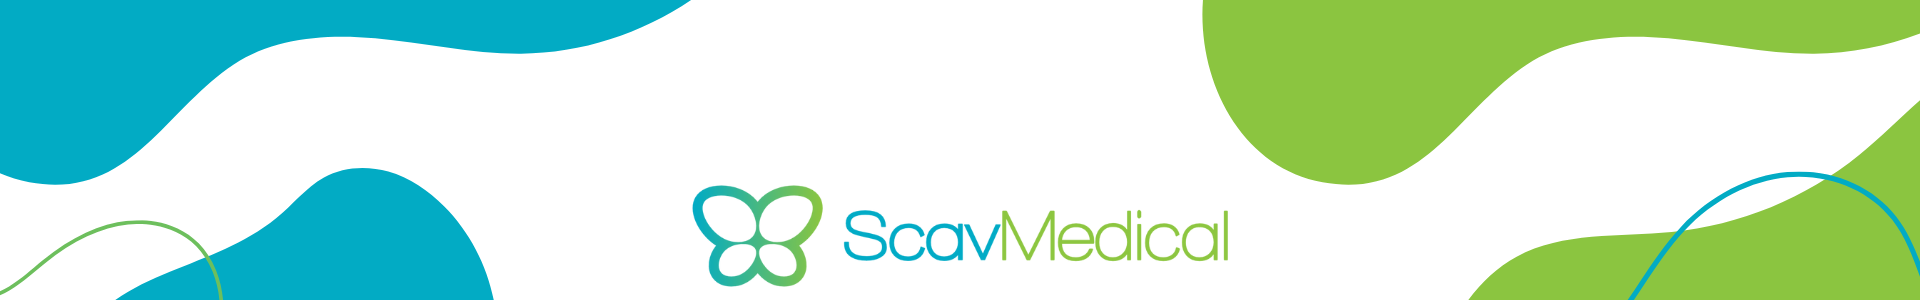 Marca Scav Medical